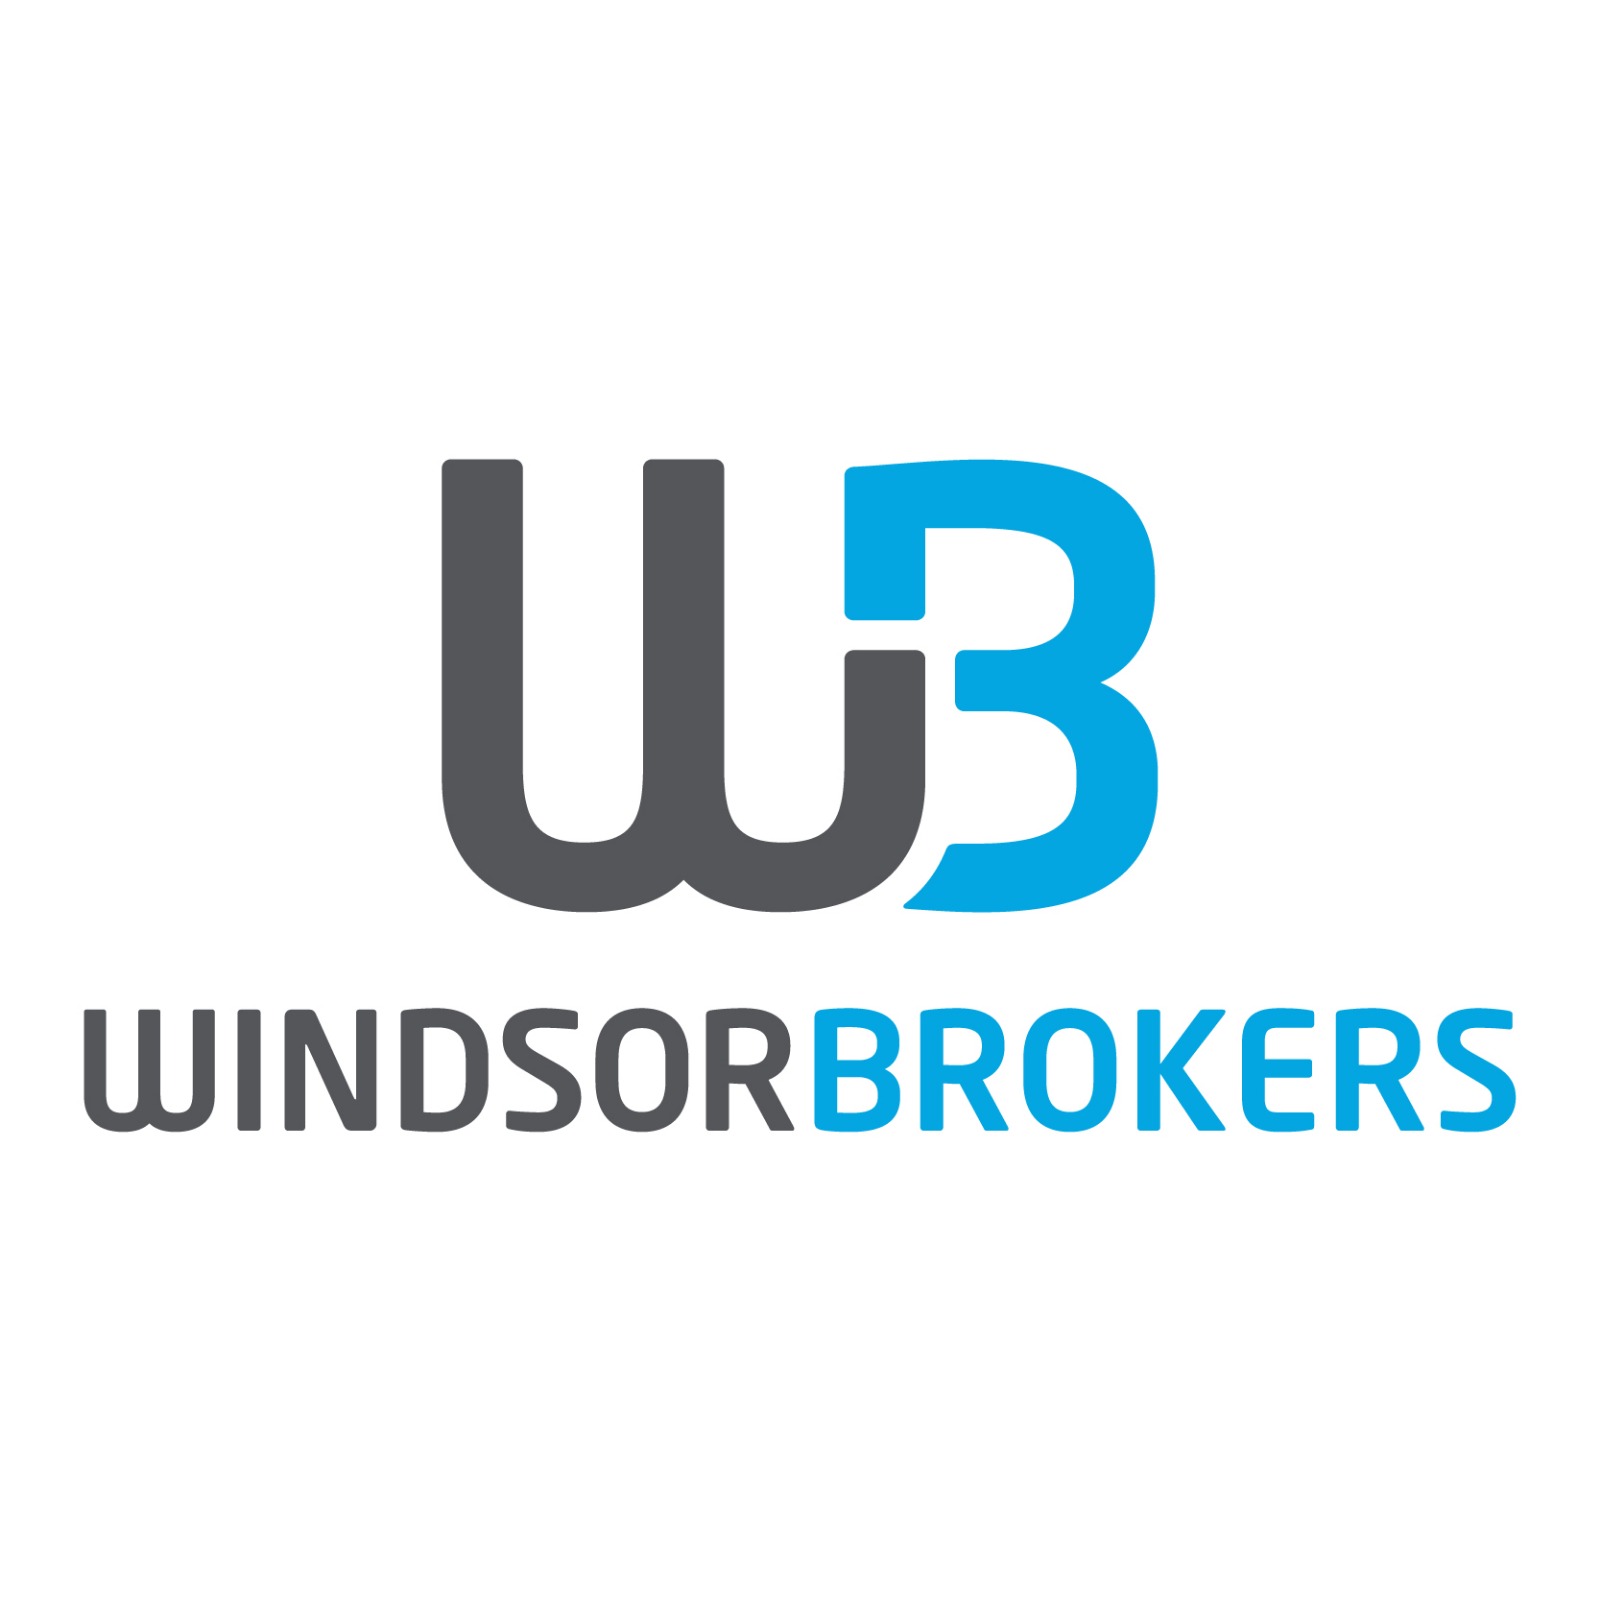 WindsorBrokers	